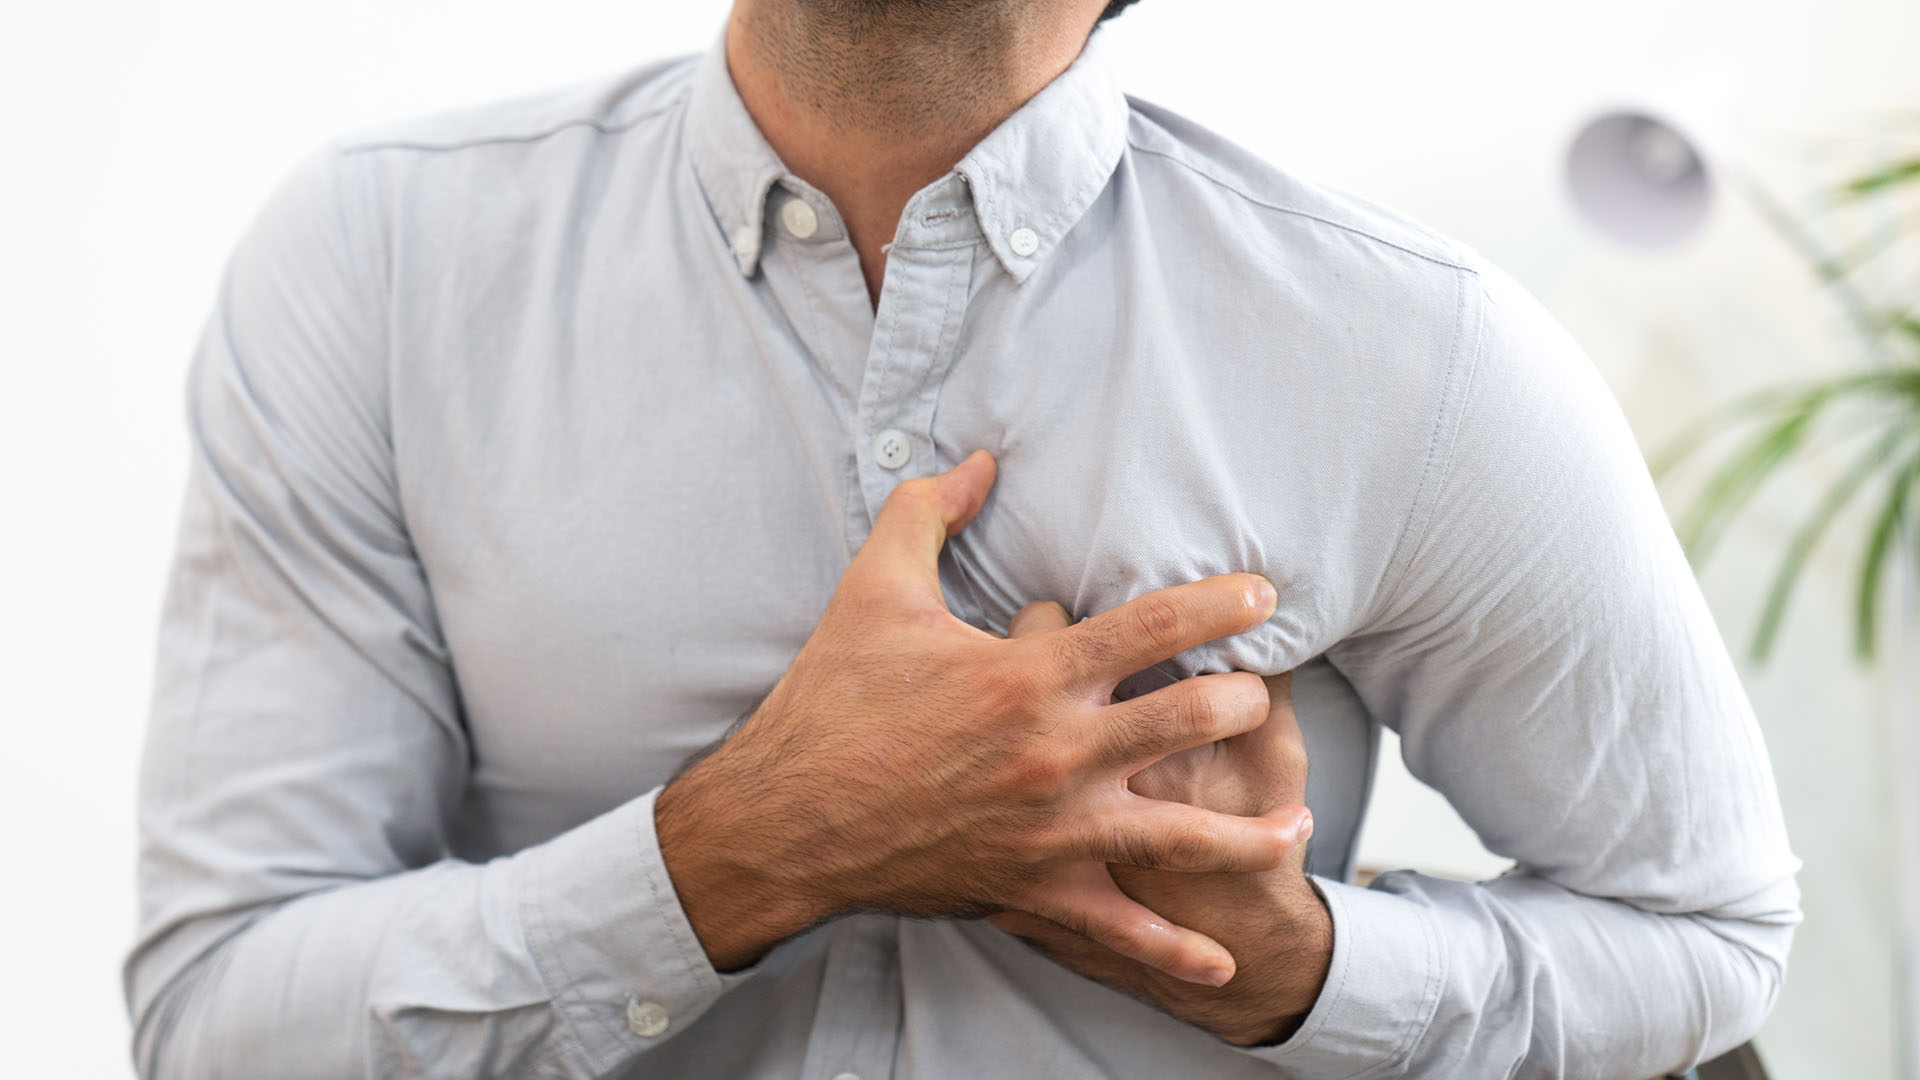 El síntoma más frecuente del ataque cardíaco es el dolor torácico, que a menudo se describe como presión o malestar (Getty)